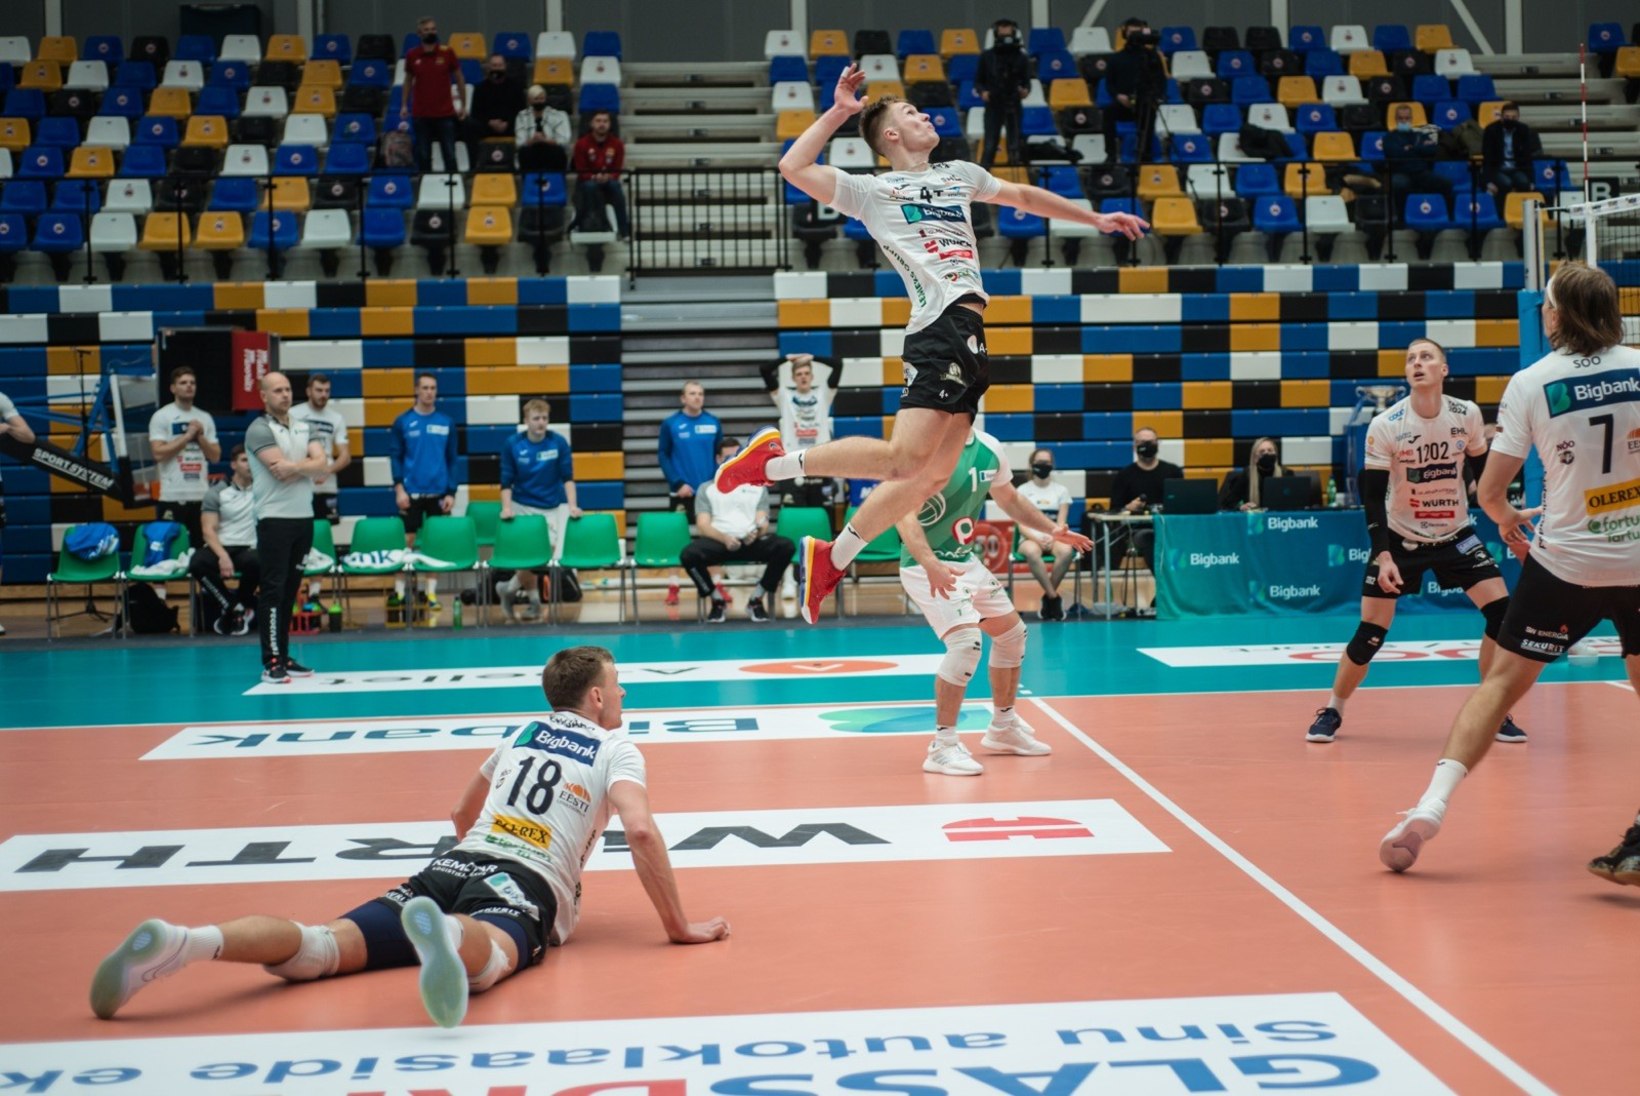 Pärnu andis lahingu, aga Tartu Bigbank asus kodus poolfinaalseeriat juhtima